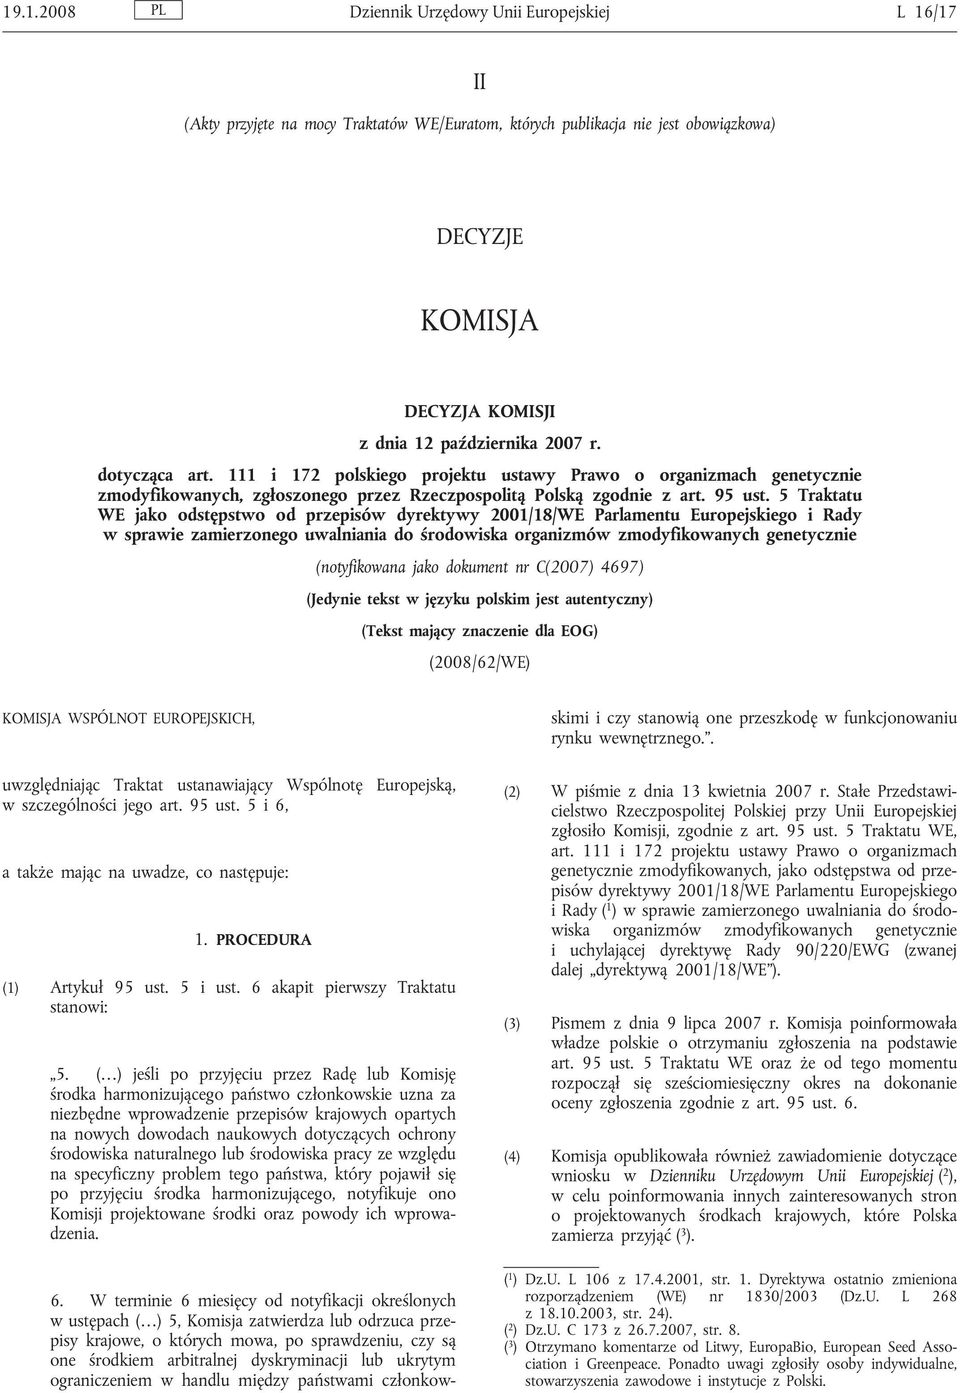 5 Traktatu WE jako odstępstwo od przepisów dyrektywy 2001/18/WE Parlamentu Europejskiego i Rady w sprawie zamierzonego uwalniania do środowiska organizmów zmodyfikowanych genetycznie (notyfikowana